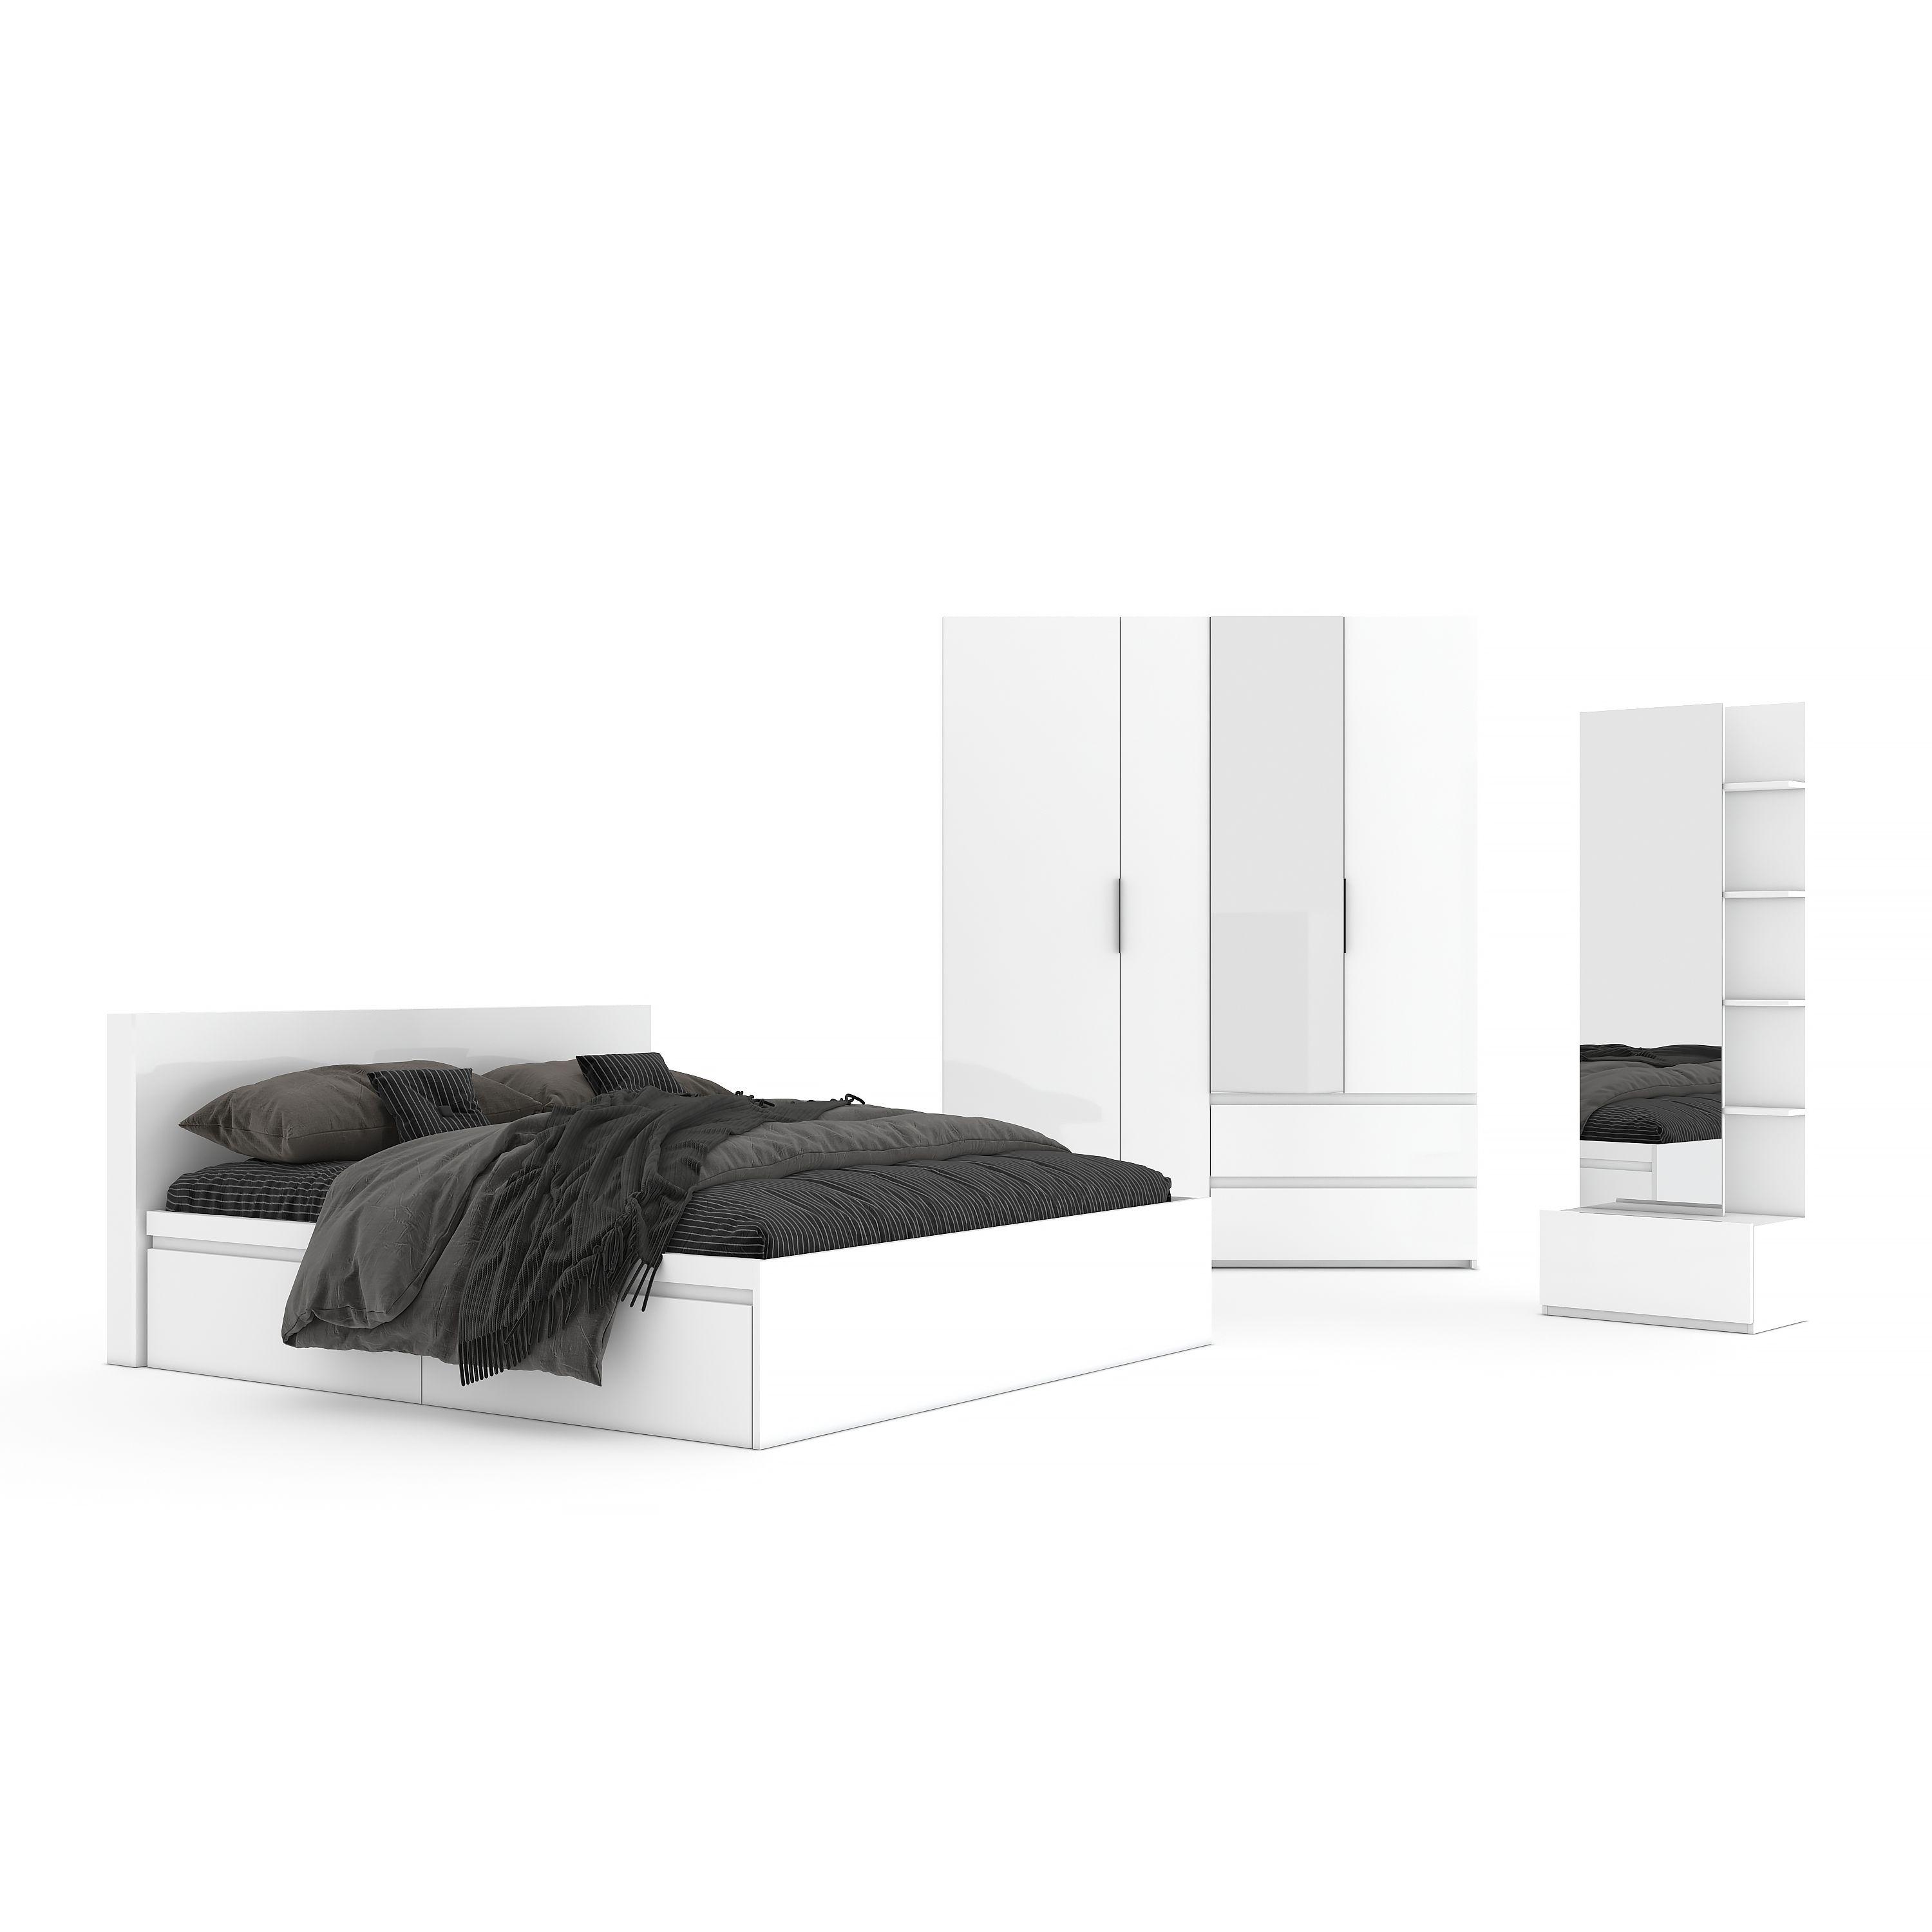 ชุดห้องนอน รุ่นแมสซิโม่ ขนาด 6 ฟุต  (เตียง 2 ลิ้นชัก+ตู้เสื้อผ้า 4 บานประตู+โต๊ะเครื่องแป้ง) - สีขาว